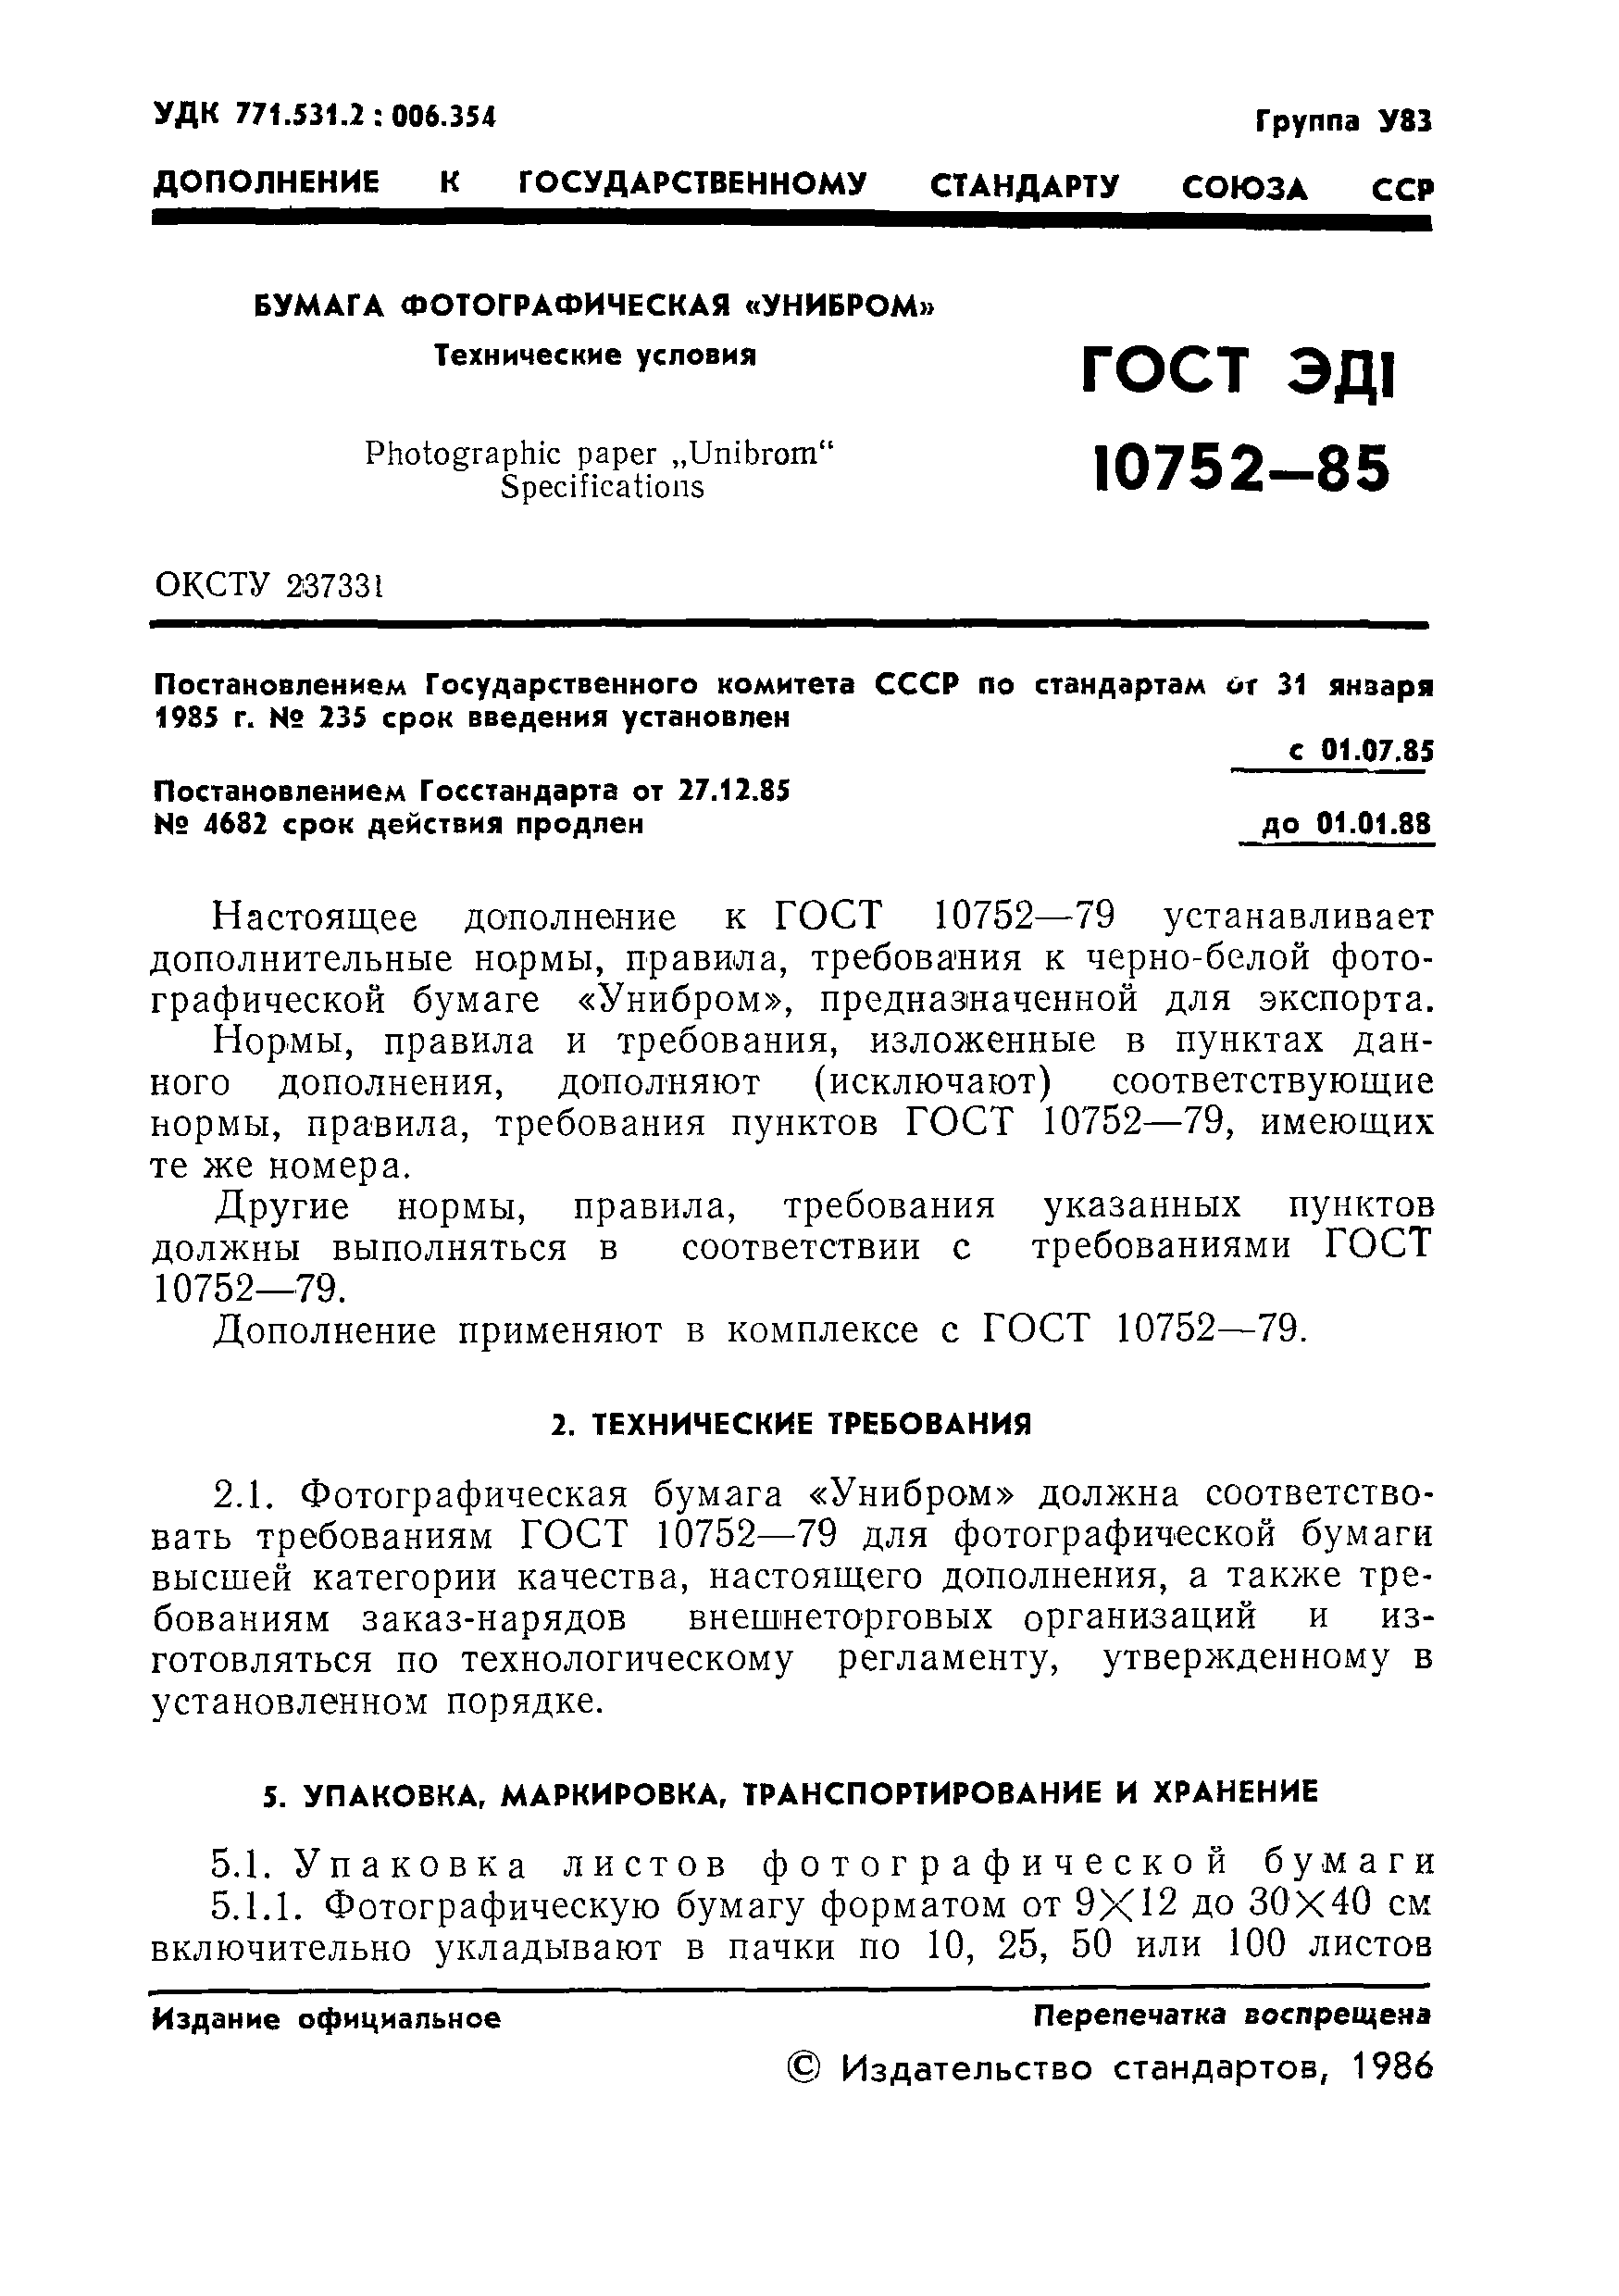 ГОСТ ЭД1 10752-85